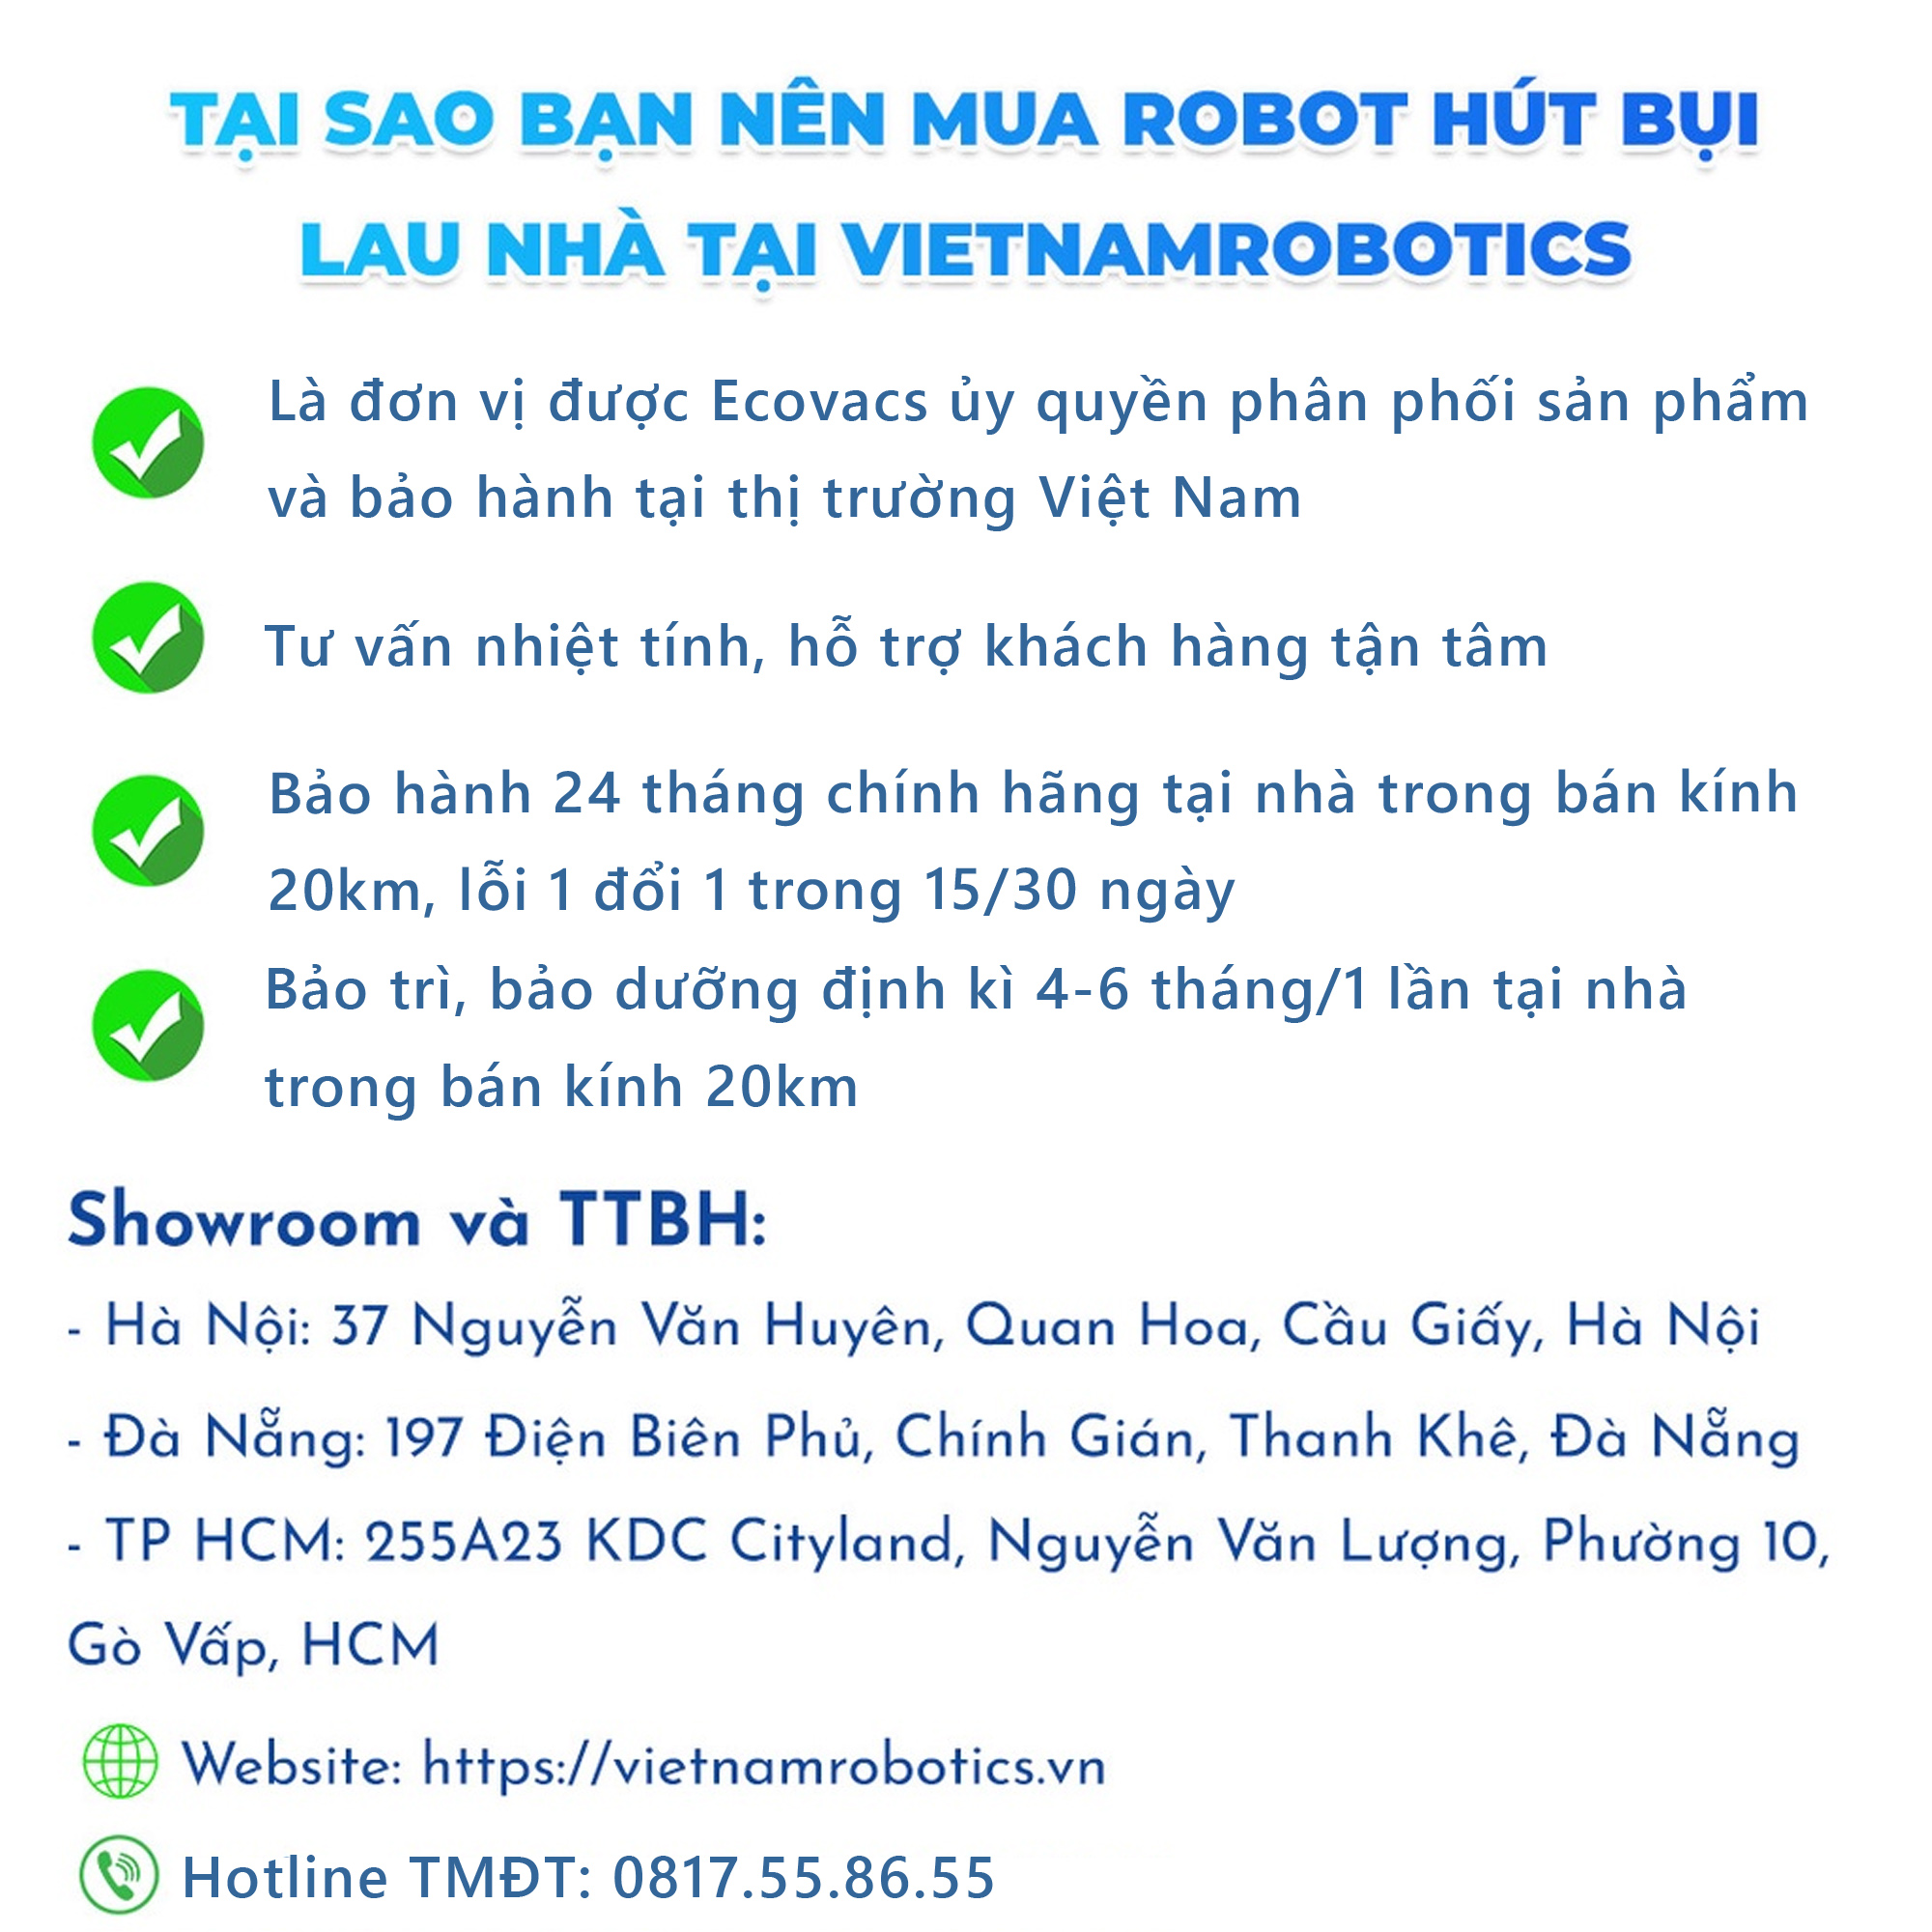 Robot hút bụi lau nhà Ecovacs Deebot N10 New - Trắng Bản Quốc tế - App Tiếng Việt, hàng nhập khẩu chính hãng full VAT, bảo hành chính hãng 24 tháng bởi Vietnam Robotics, lực hút 4300Pa, thời gian hoạt động 330 phút liên tục